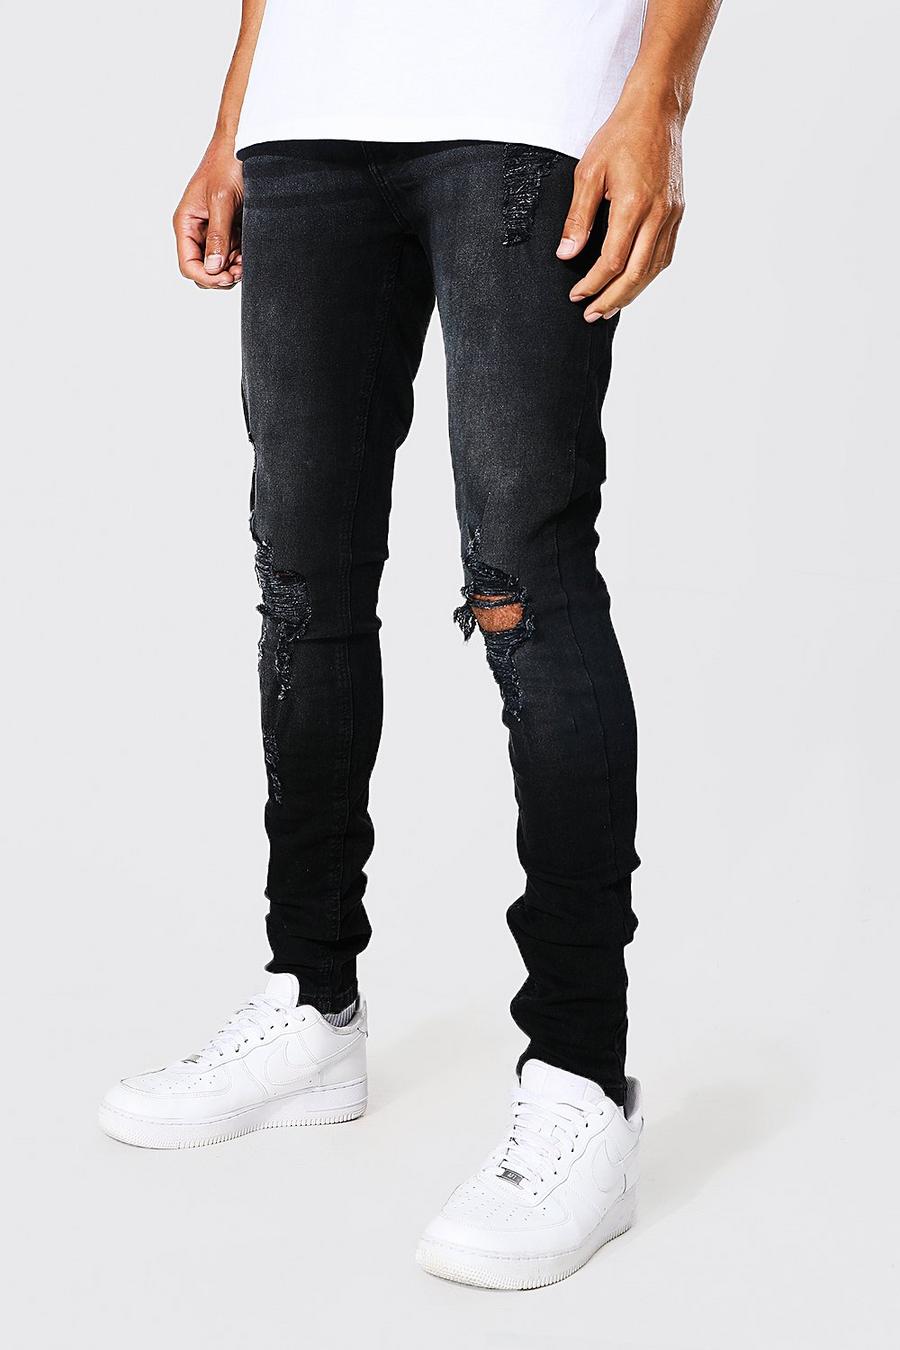 שחור דהוי סקיני ג'ינס עם קרעים ובד משופשף בברכיים, לגברים גבוהים